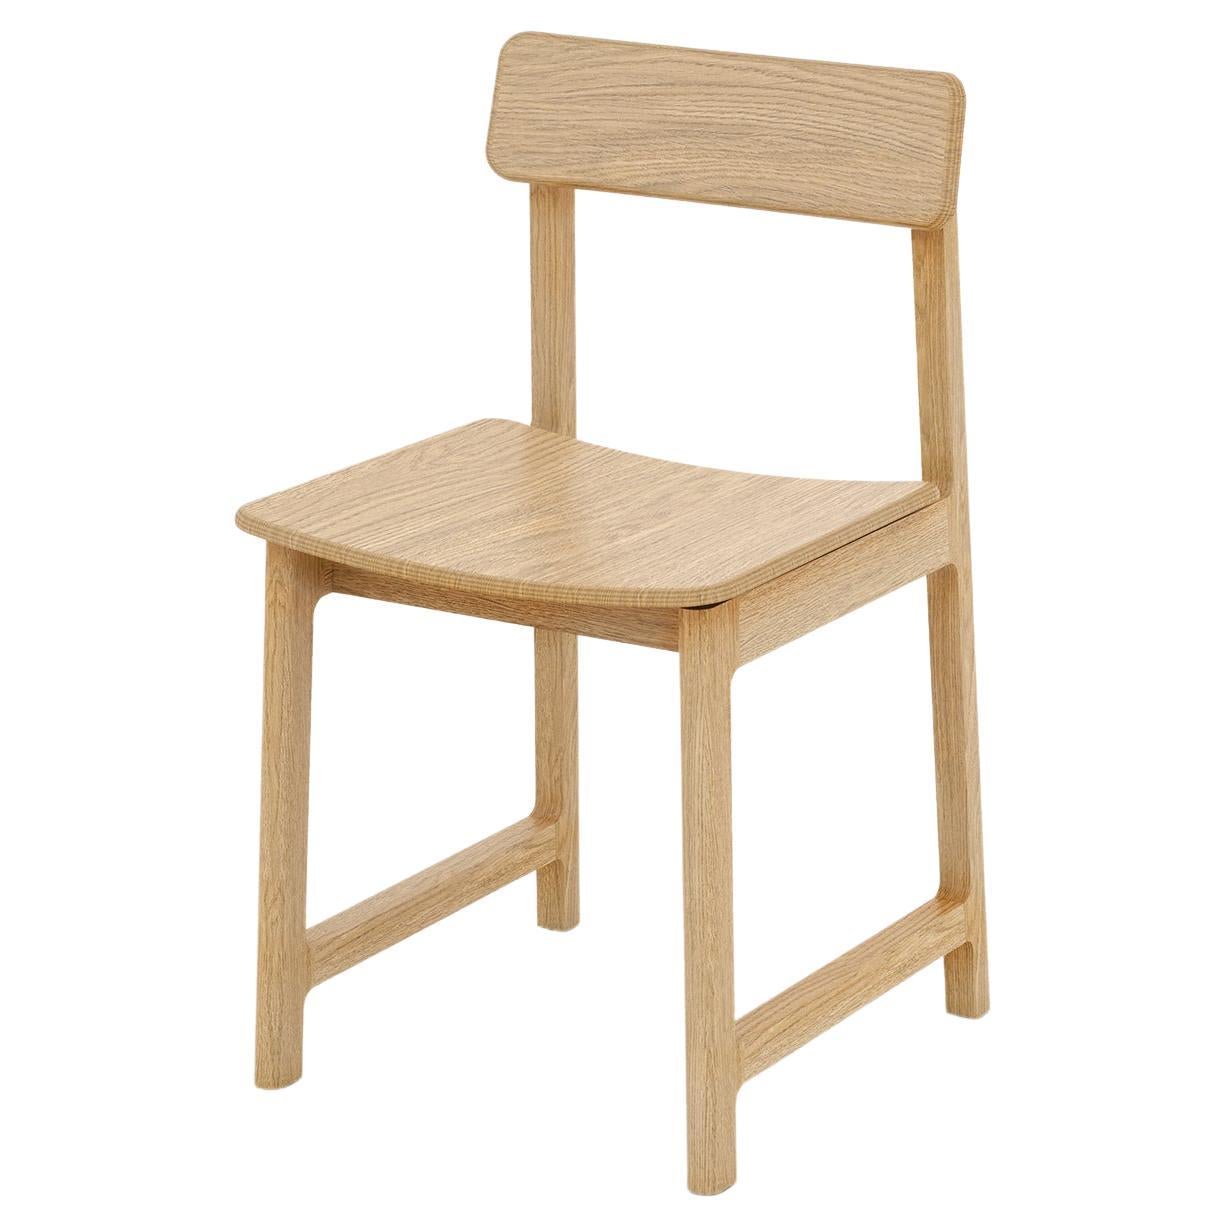 Chaise moderne minimaliste avec cadre en bois de chêne